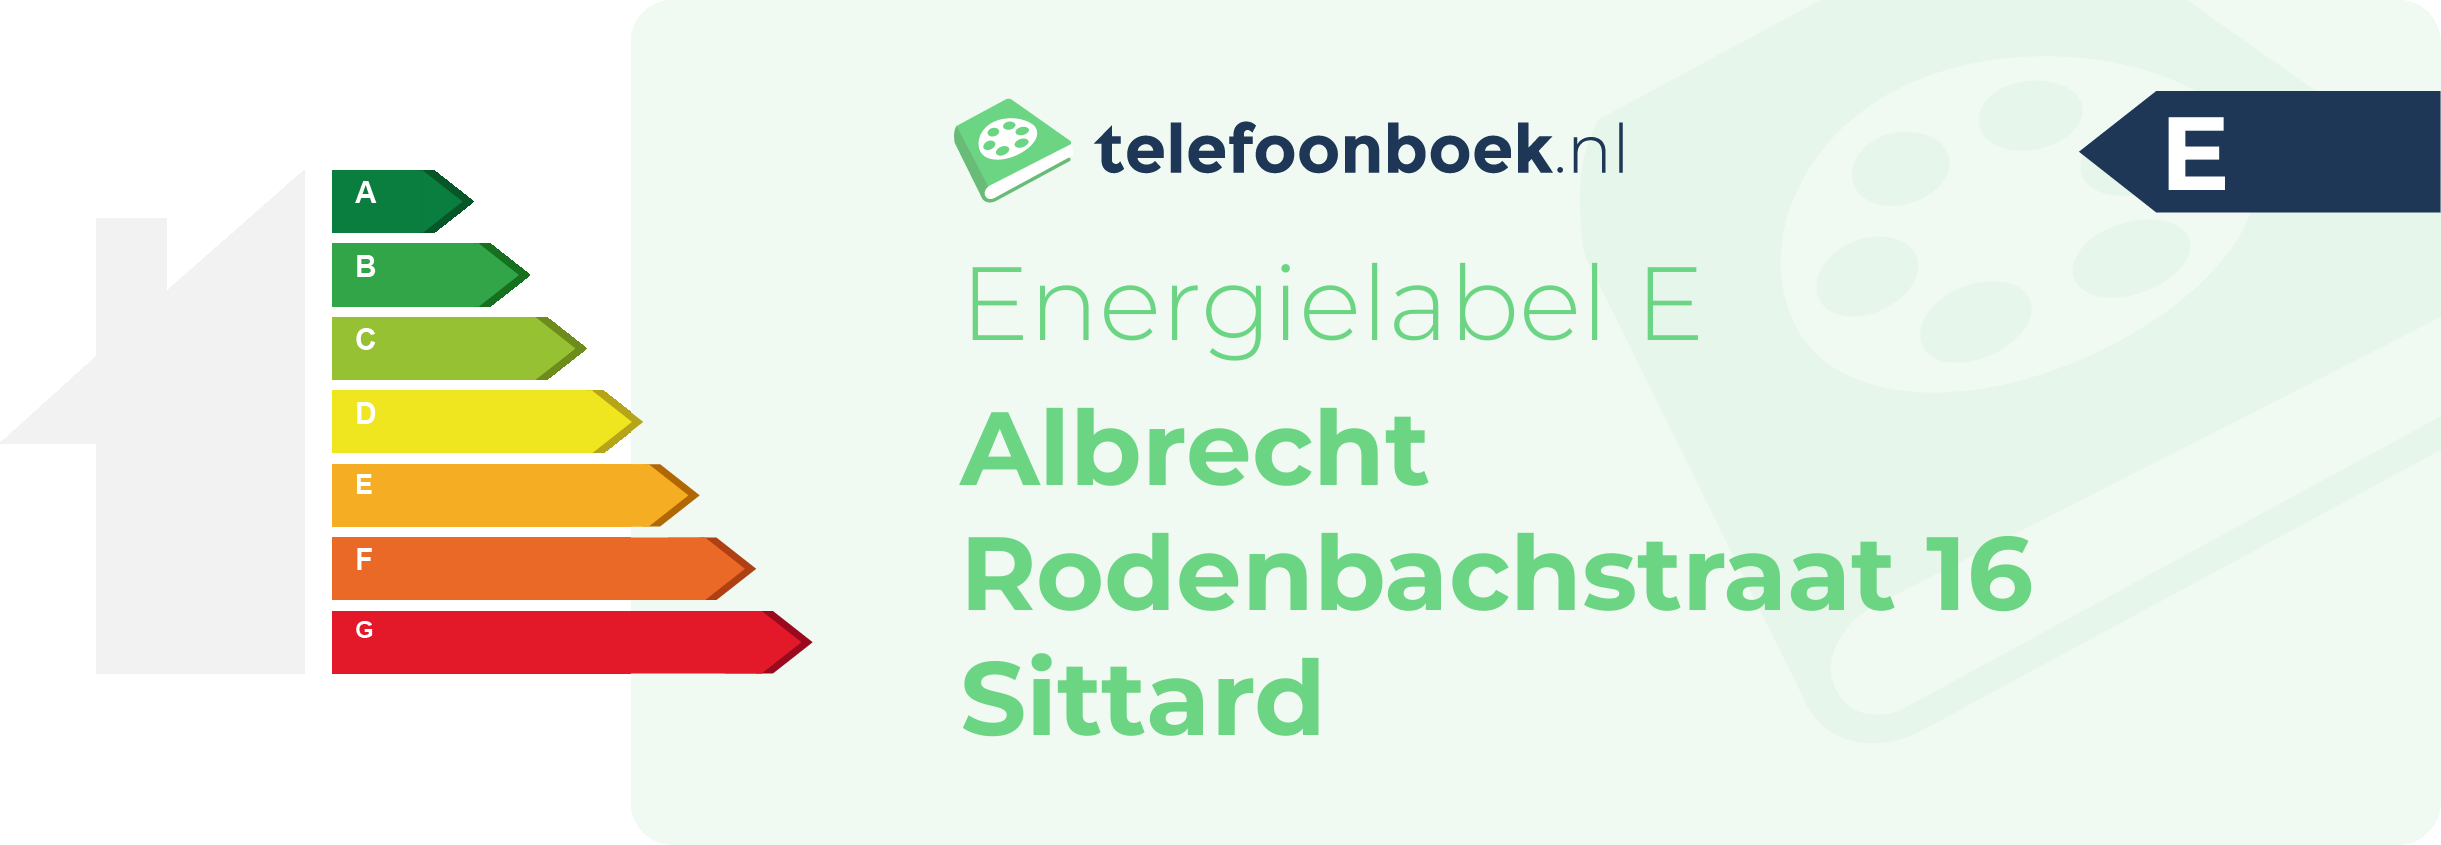 Energielabel Albrecht Rodenbachstraat 16 Sittard